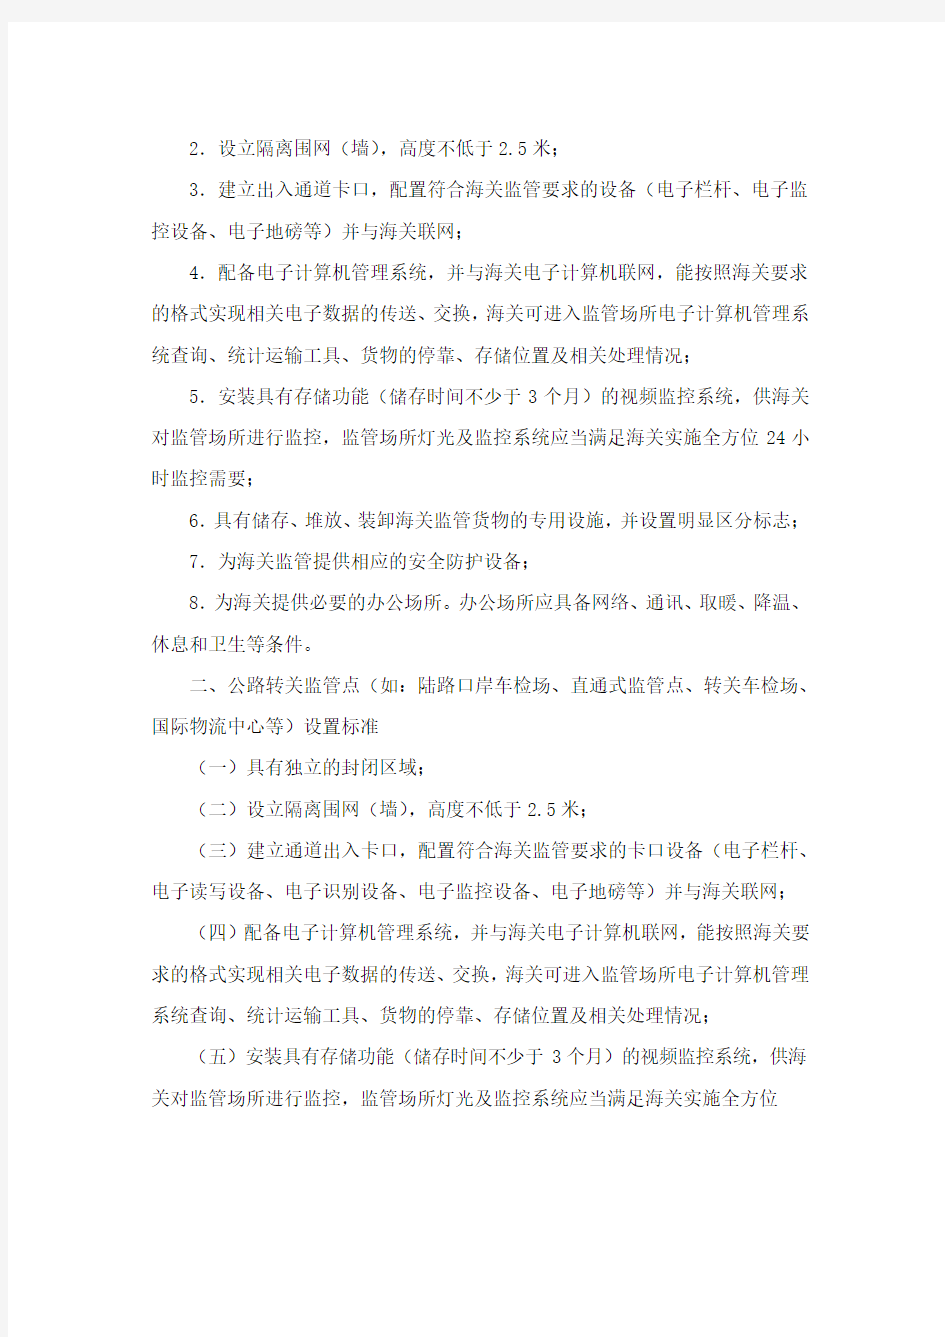 中华人民共和国海关监管场所设置标准